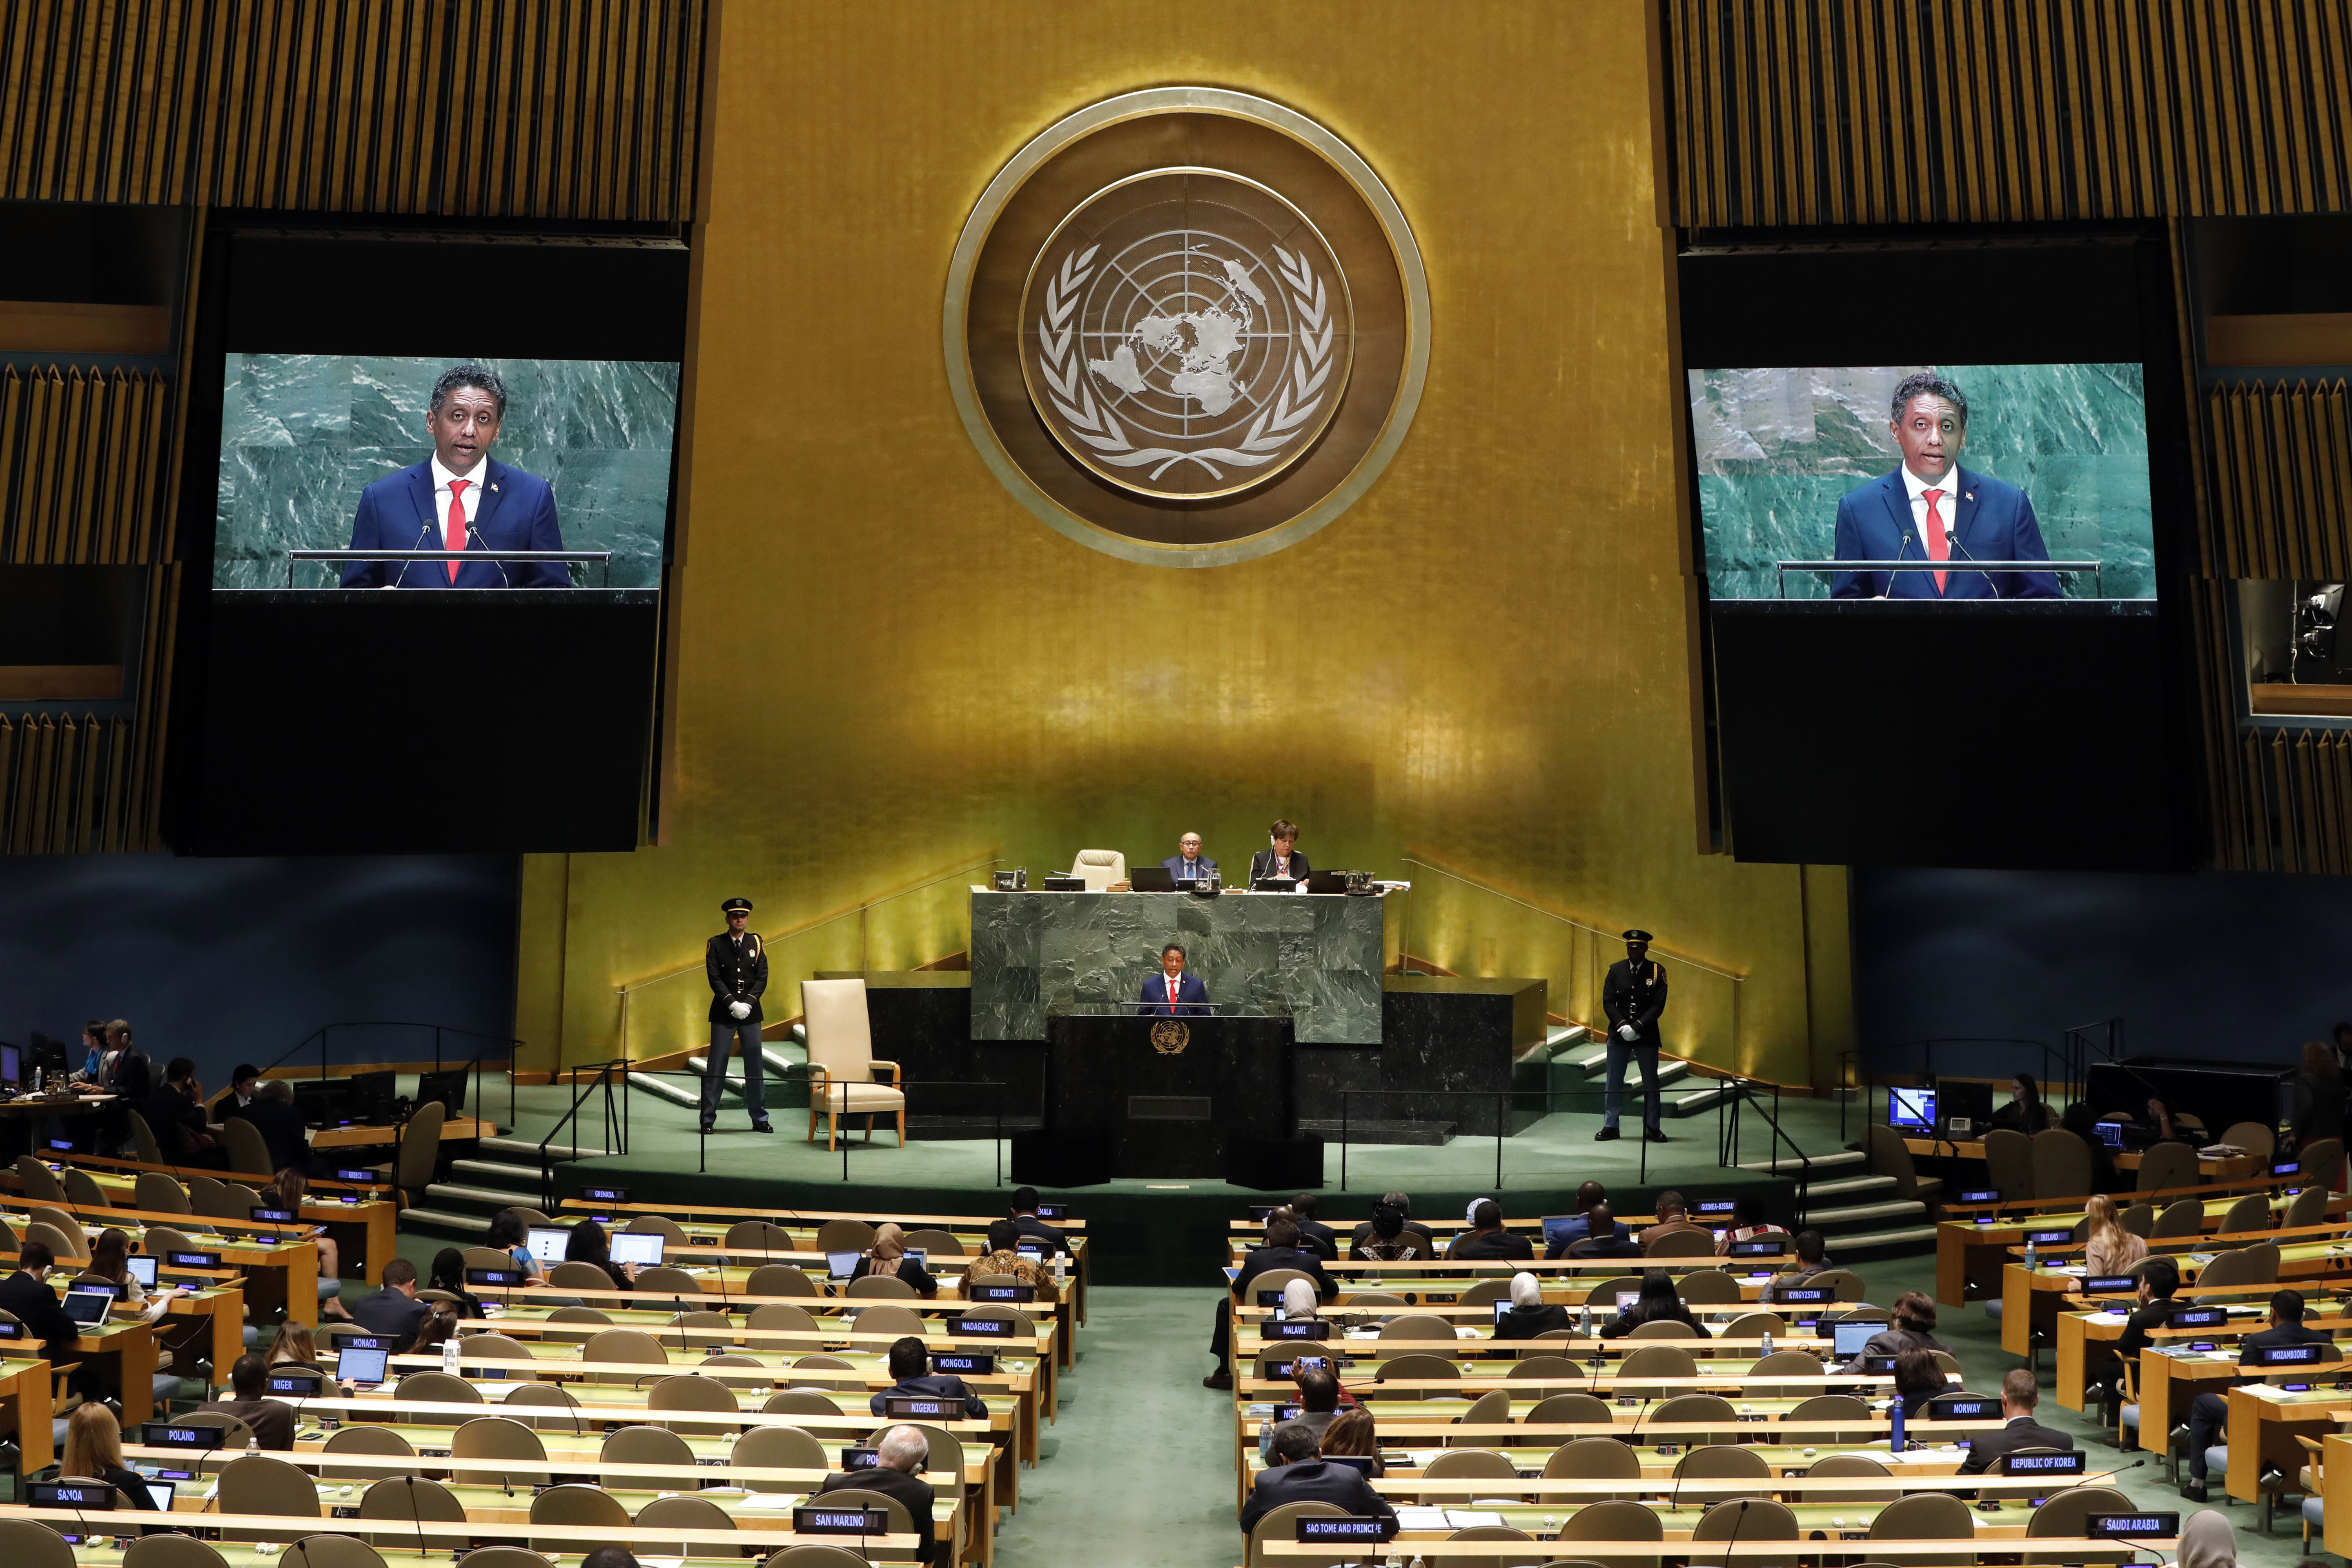 Страны признанные оон. Генеральная Ассамблея ООН. Заседание Генеральной Ассамблеи ООН. Зал заседания Генеральной Ассамблеи ООН. Генеральная Ассамблея ООН 1995.